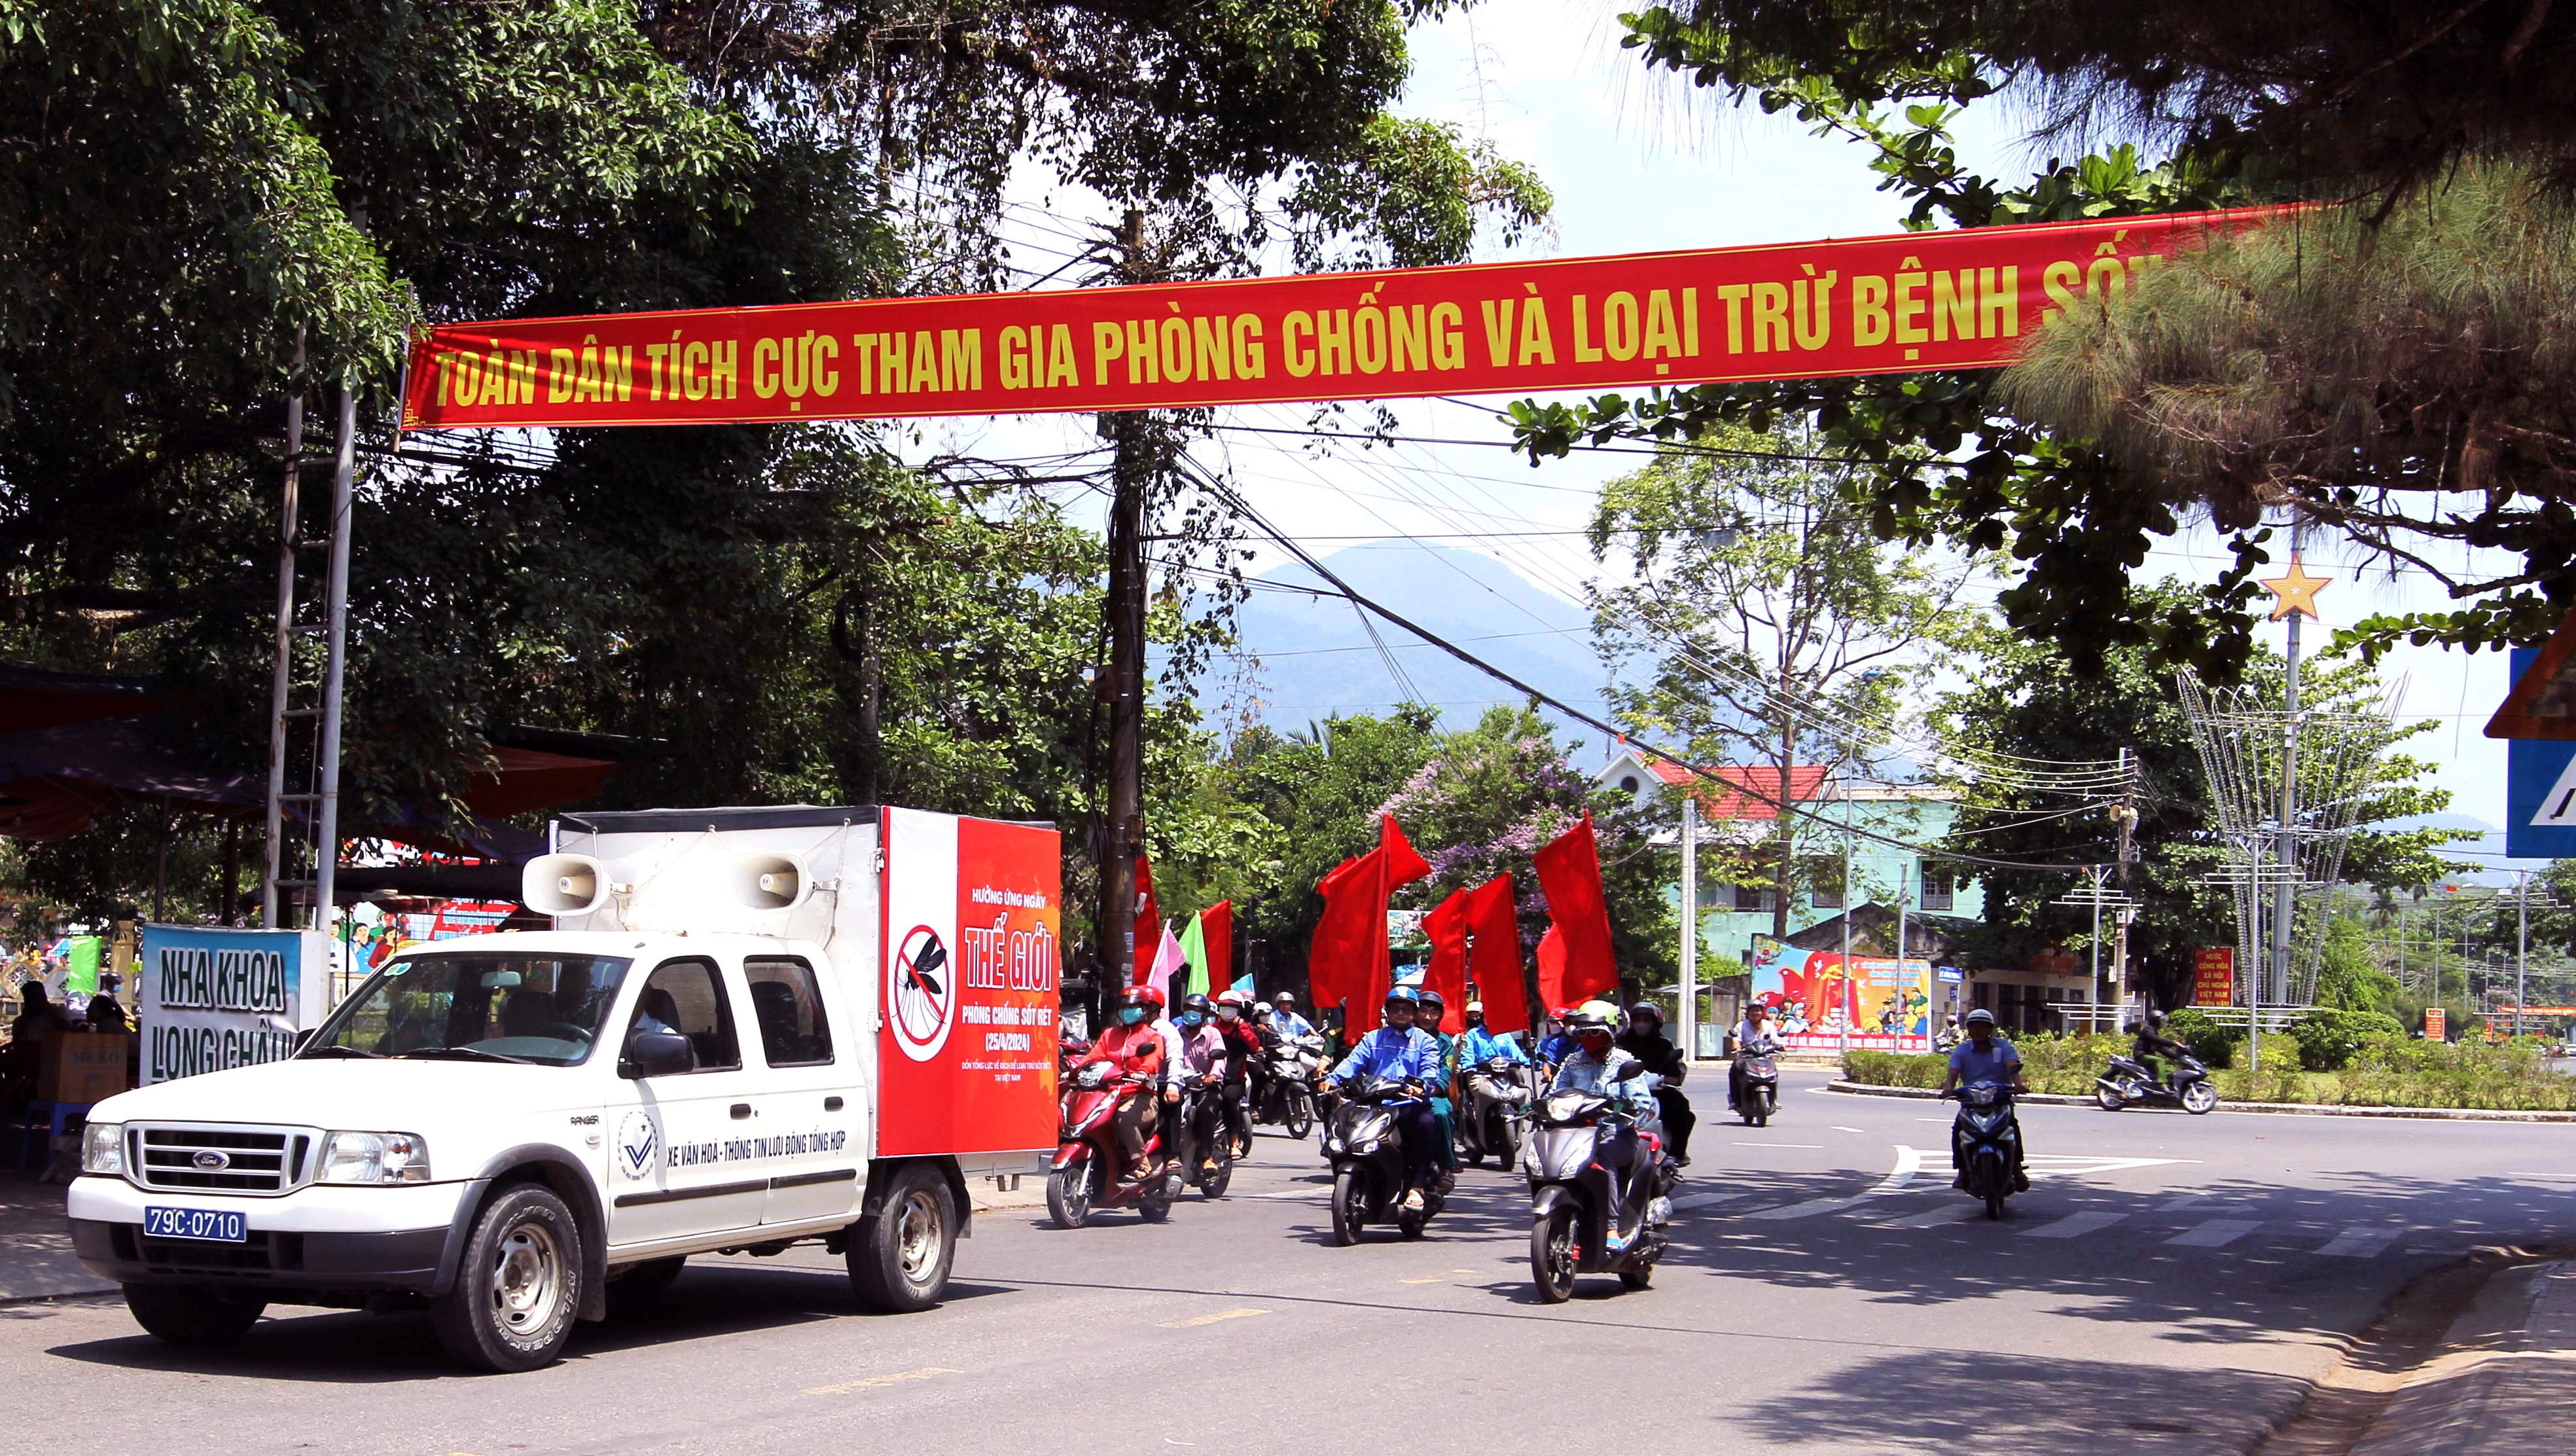 Hưởng ứng Ngày Thế giới phòng, chống bệnh sốt rét: “Dồn tổng lực về đích để loại trừ sốt rét ở Việt Nam”